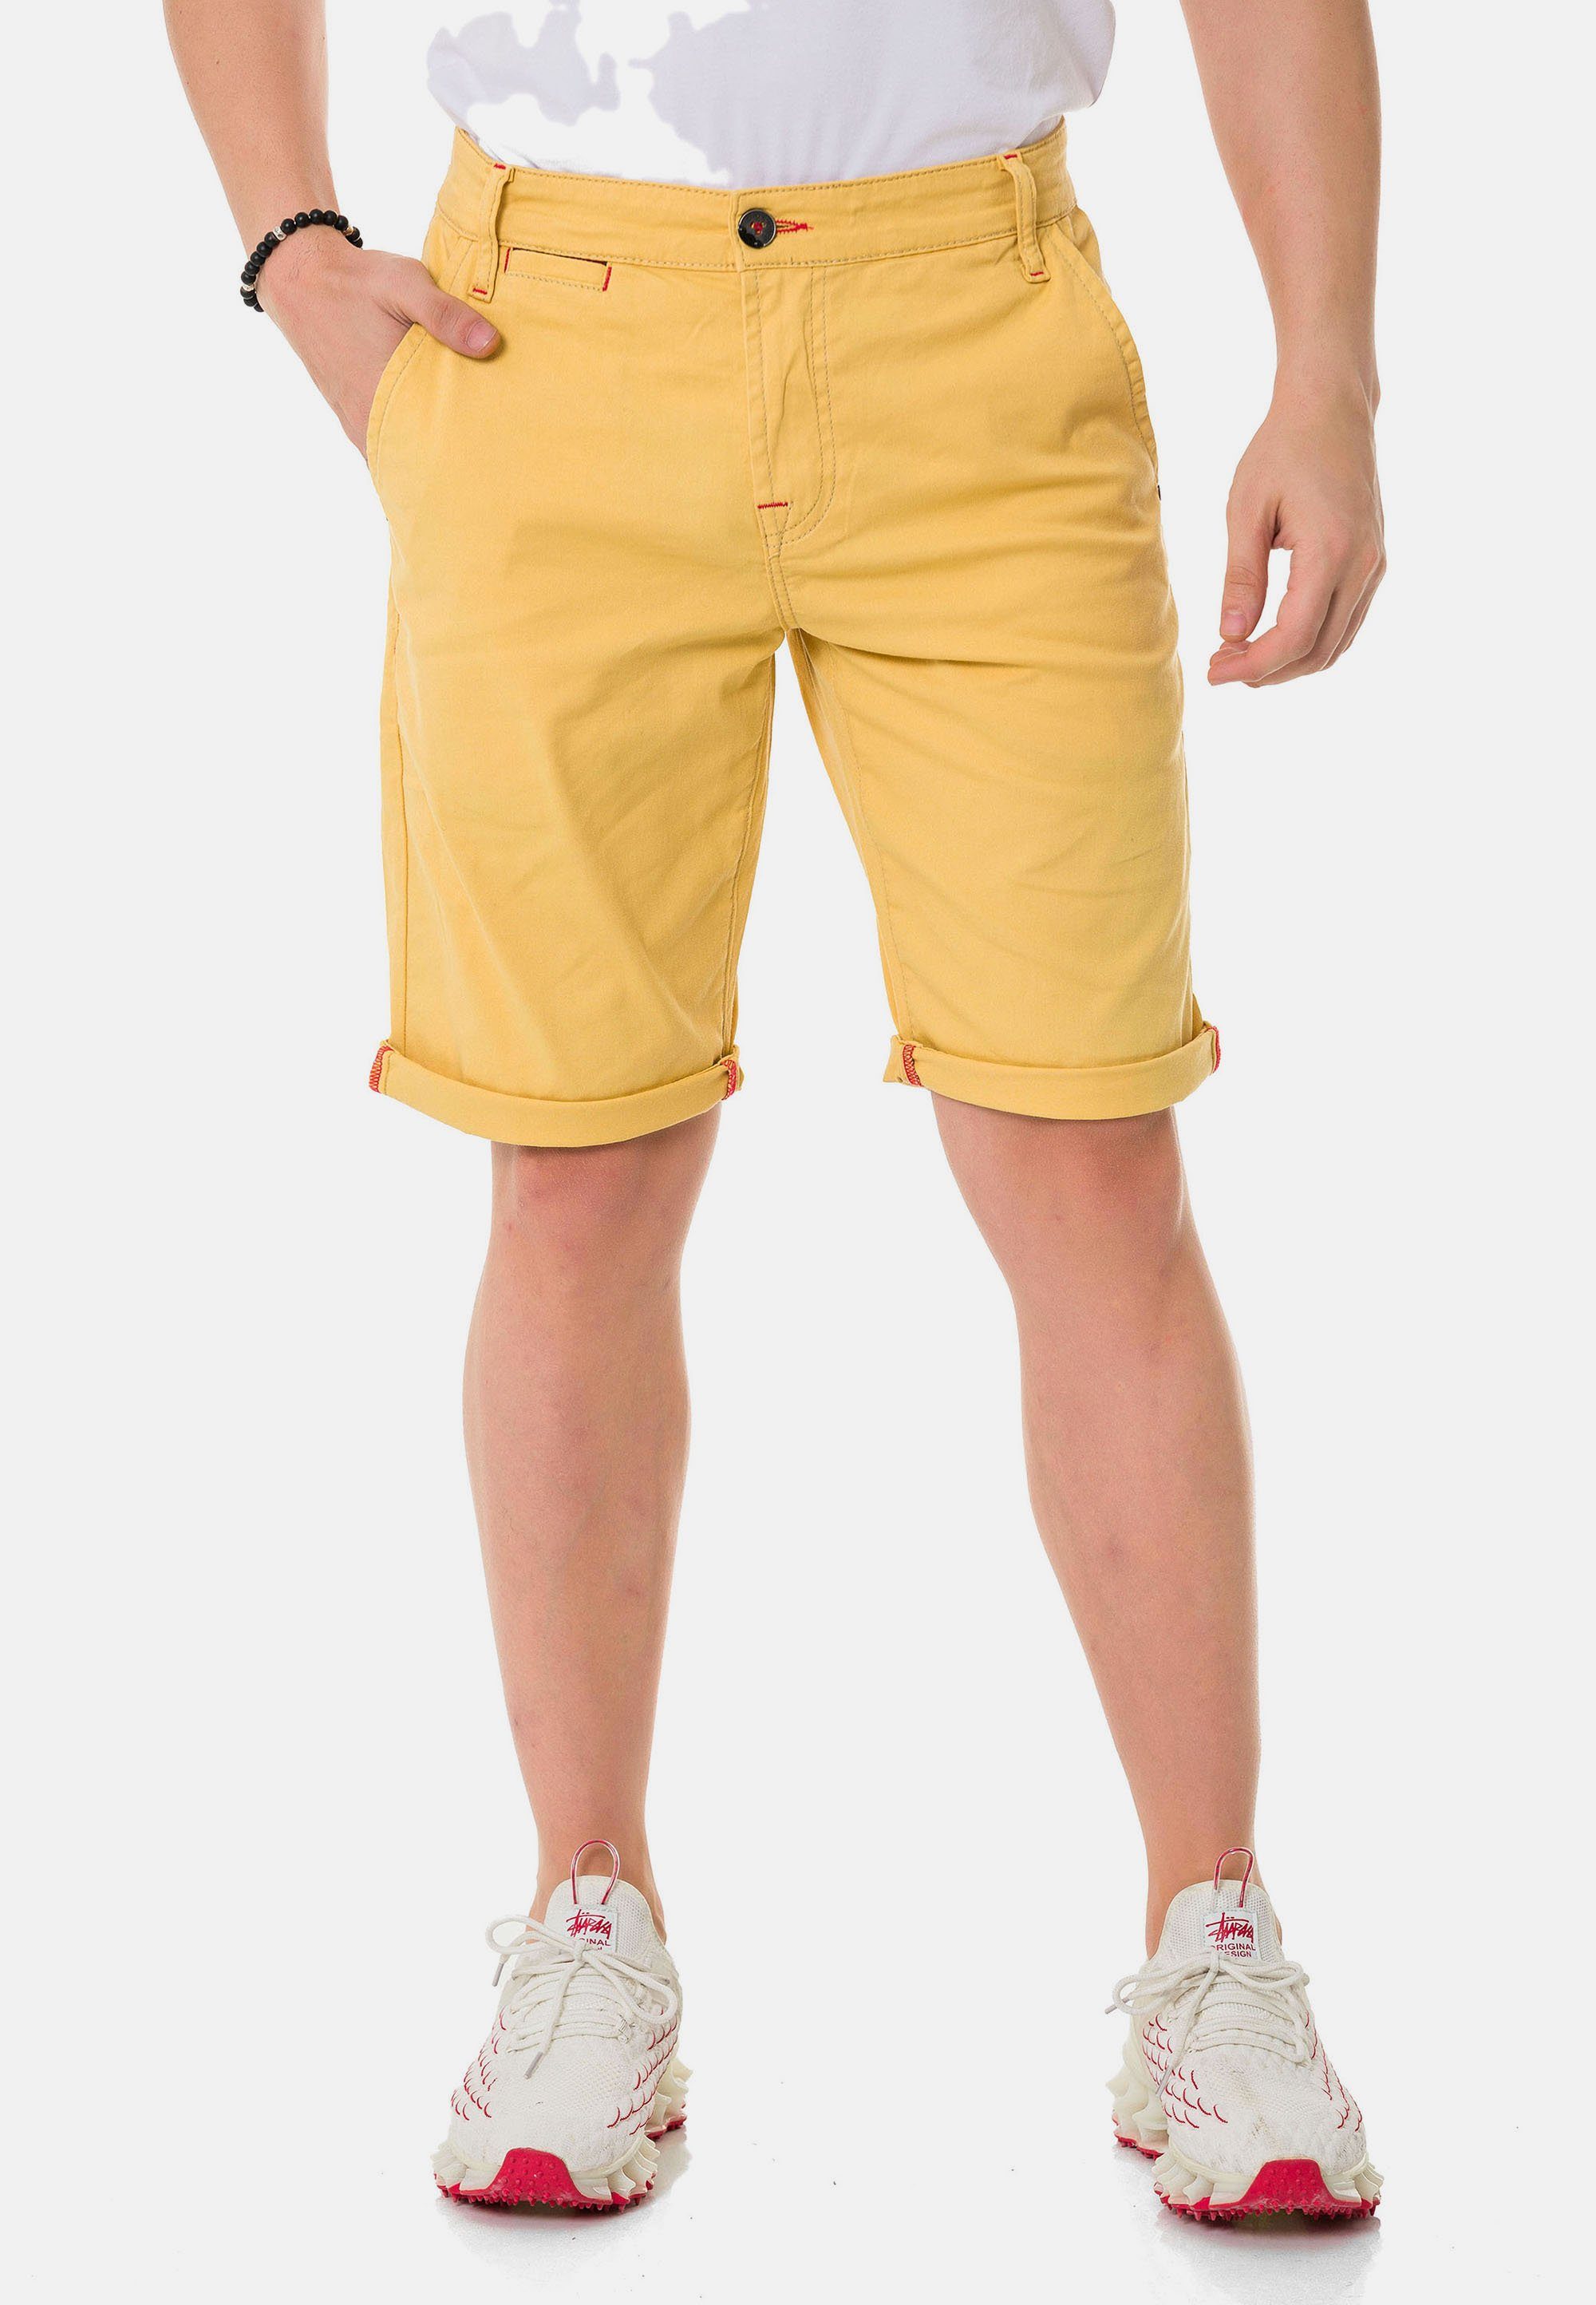 Cipo & Baxx Shorts im einfarbigen Look gelb